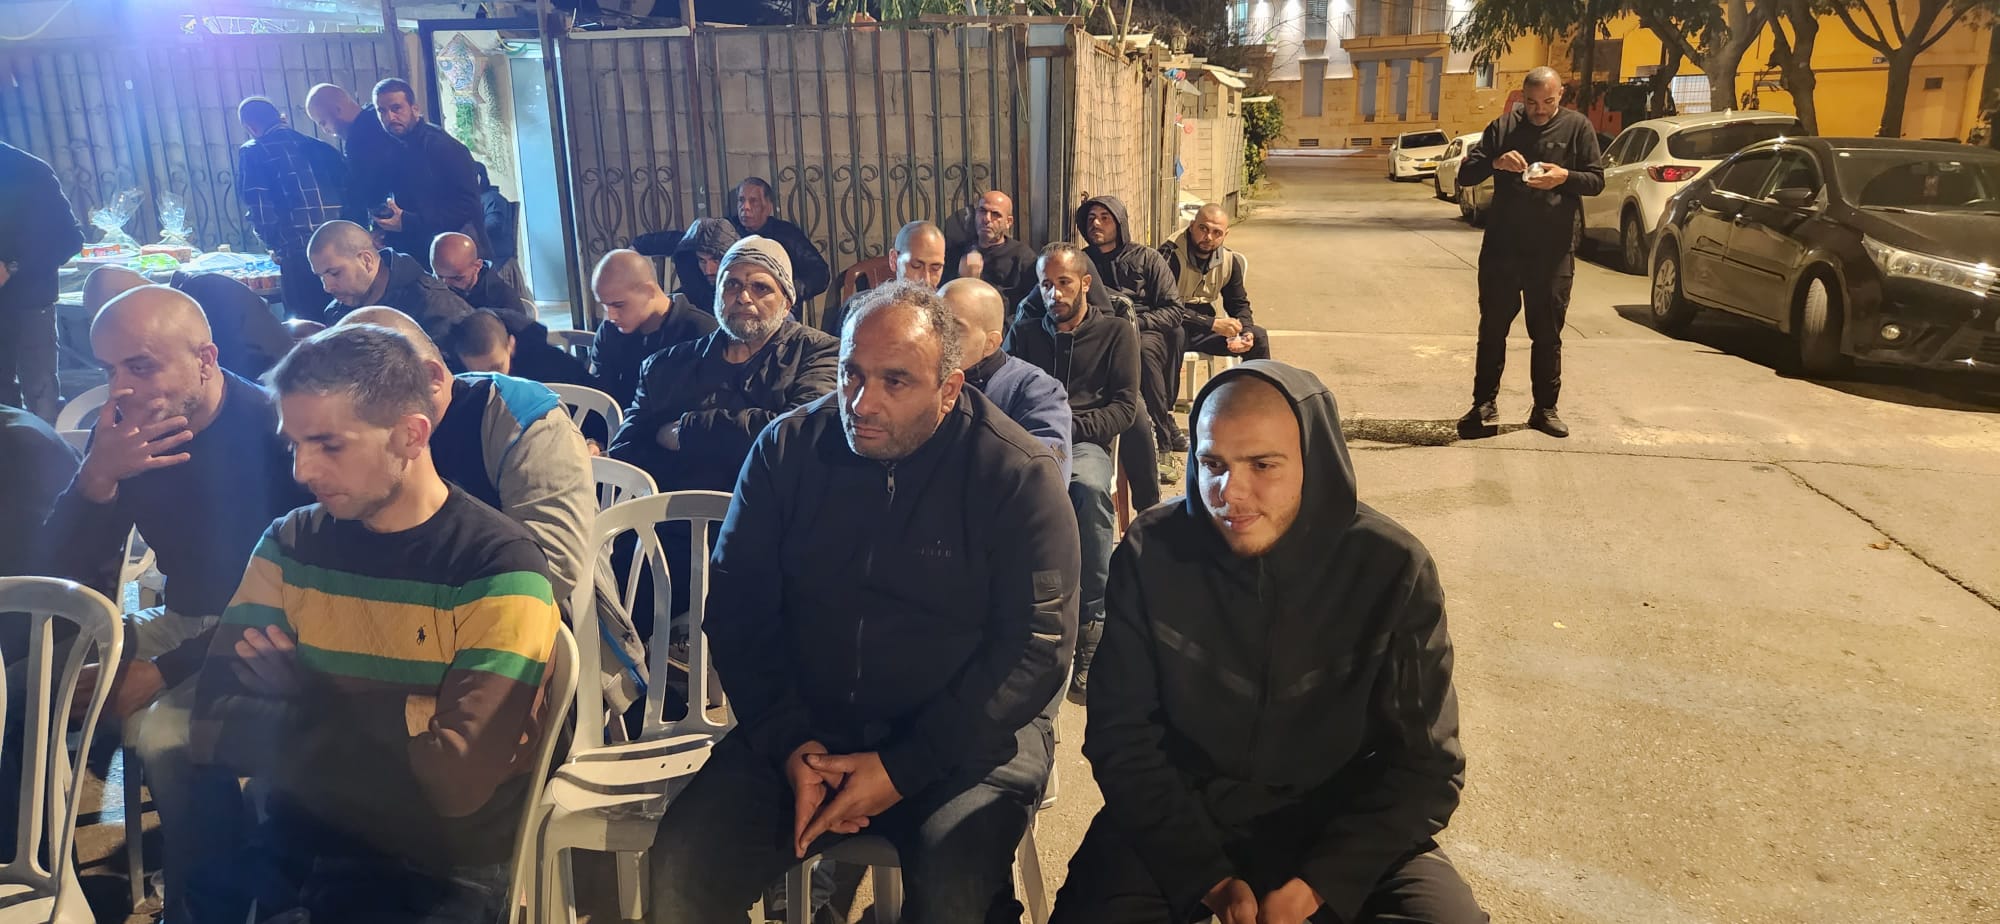 يافا: آل موسى يستضيفون الدرس الثاني لأسبوع الدعوة إستقبالًا لرمضان